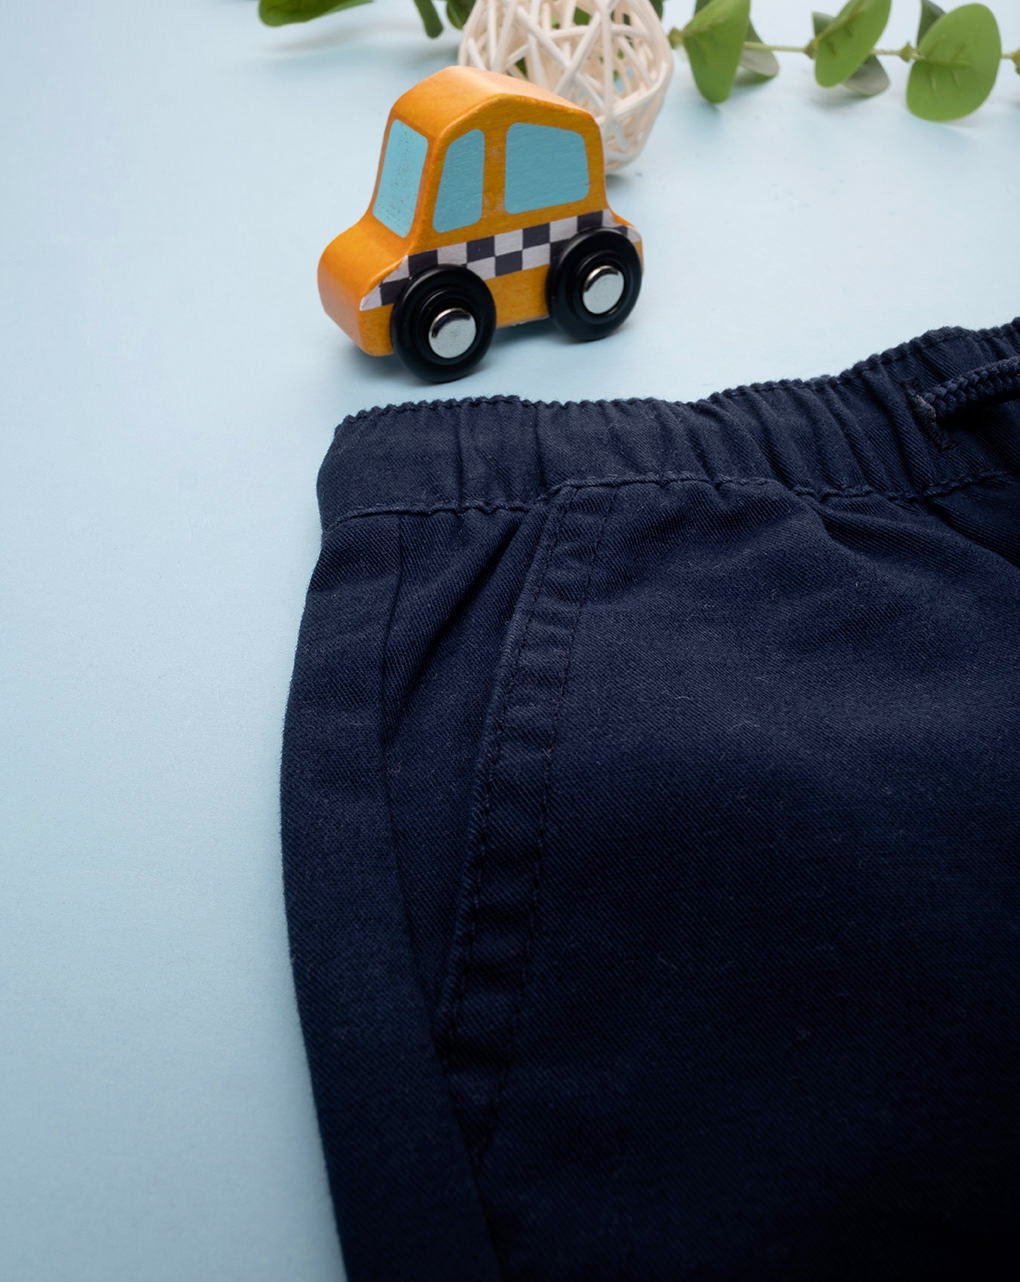 βρεφικό παντελόνι twill μπλε σκούρο για αγόρι - Prénatal